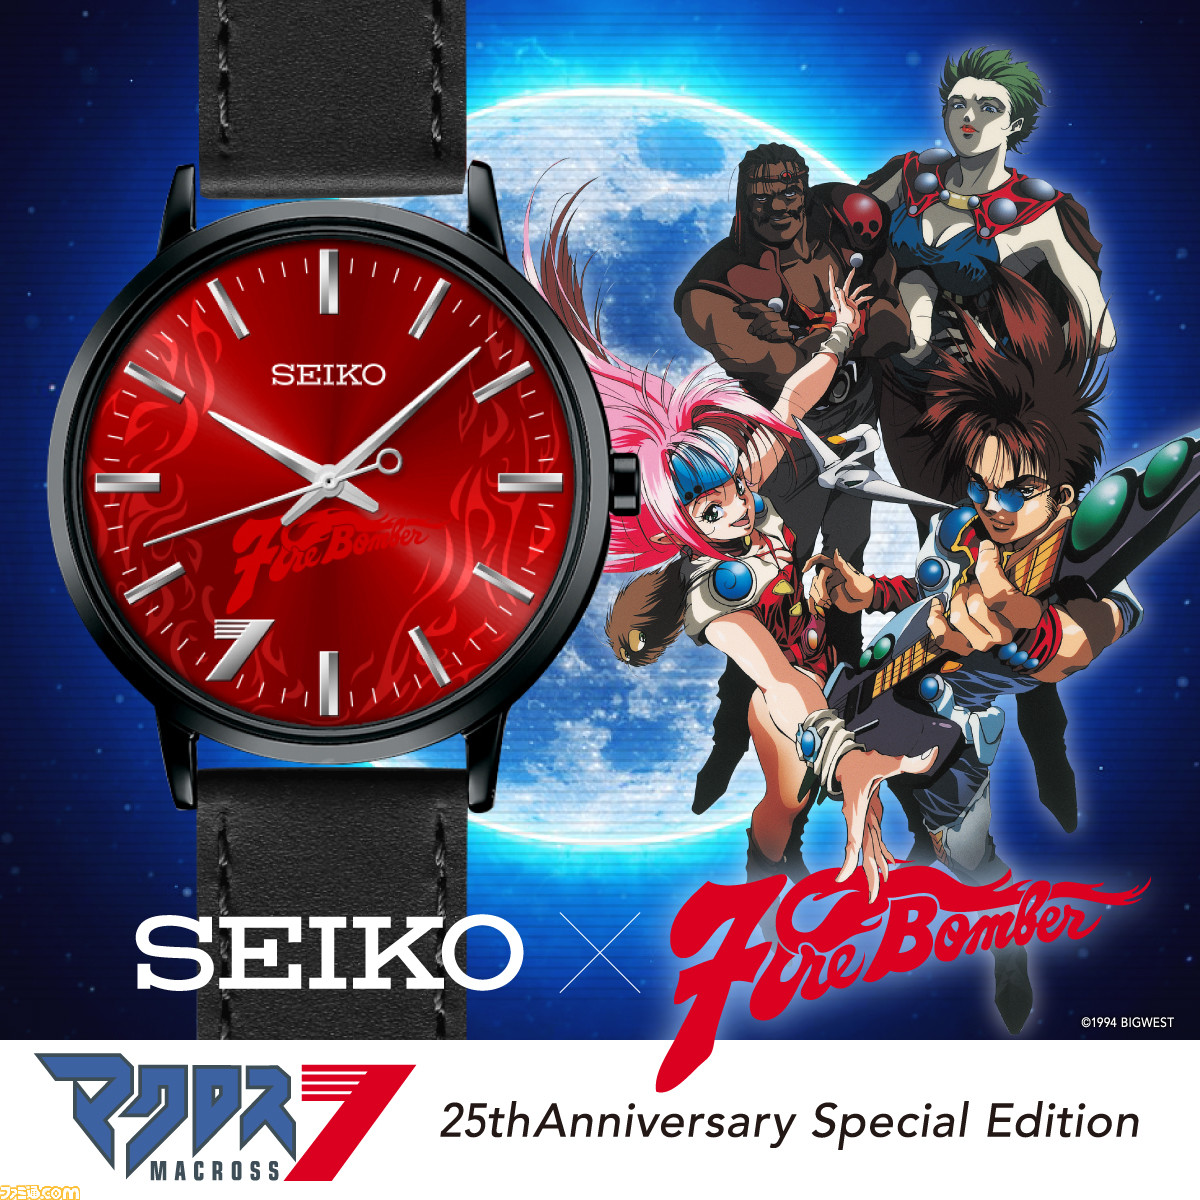 マクロス7 25周年記念のseikoのコラボ腕時計が登場 炎の赤い文字盤に Fire Bomber のクールなデザイン ゲーム エンタメ最新情報のファミ通 Com